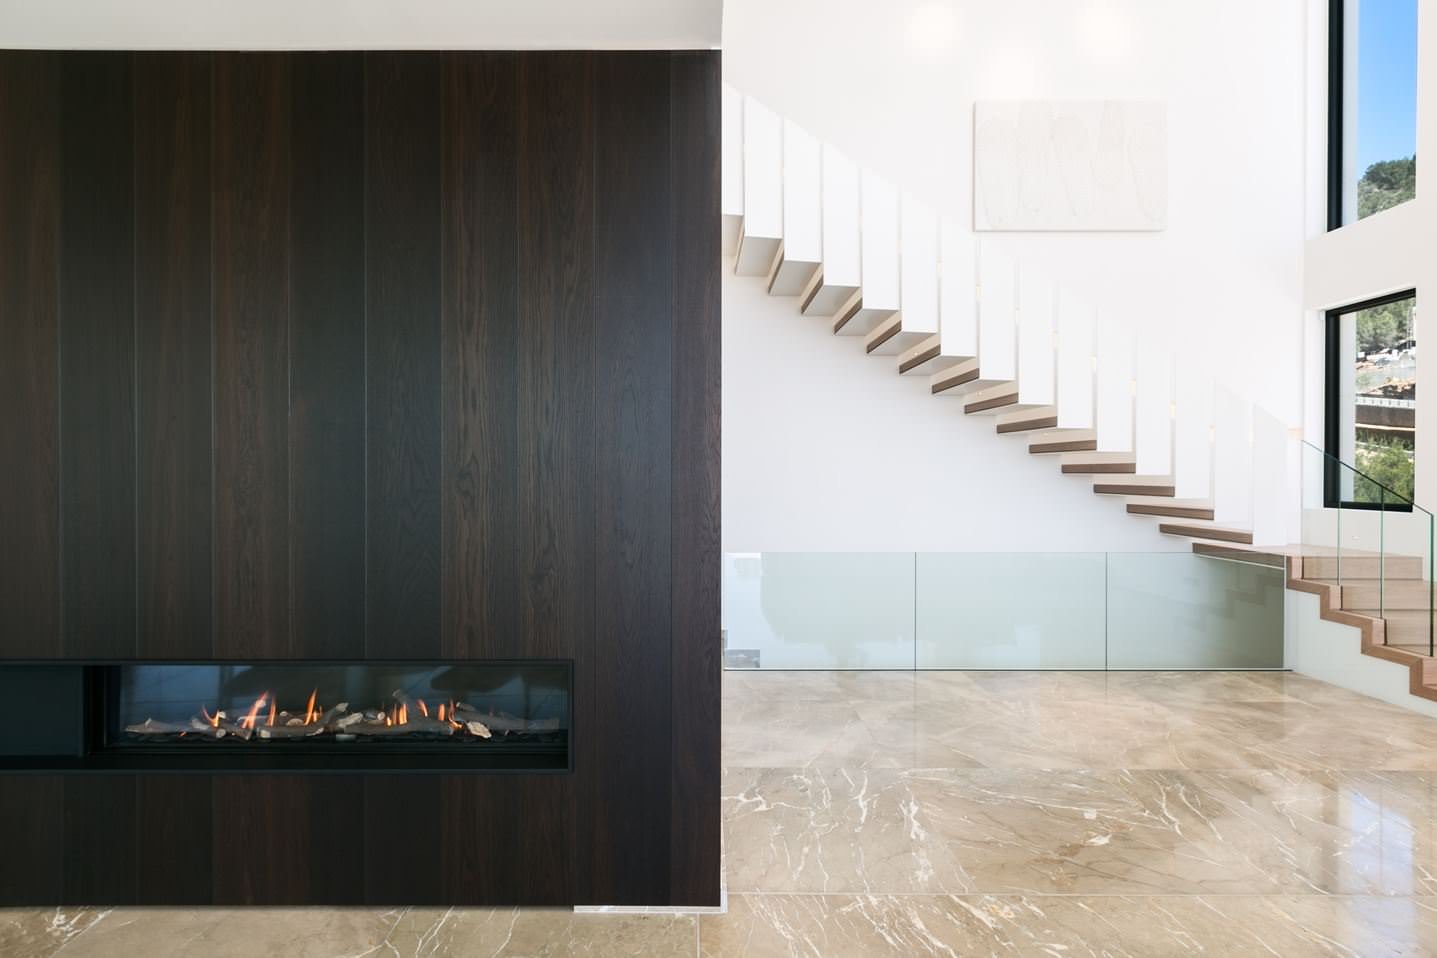 Stupenda scala con la struttura in acciaio  verniciato bianco su cui poggiano i gradini in legno chiaro - Ispirazione scale moderne ed eleganti